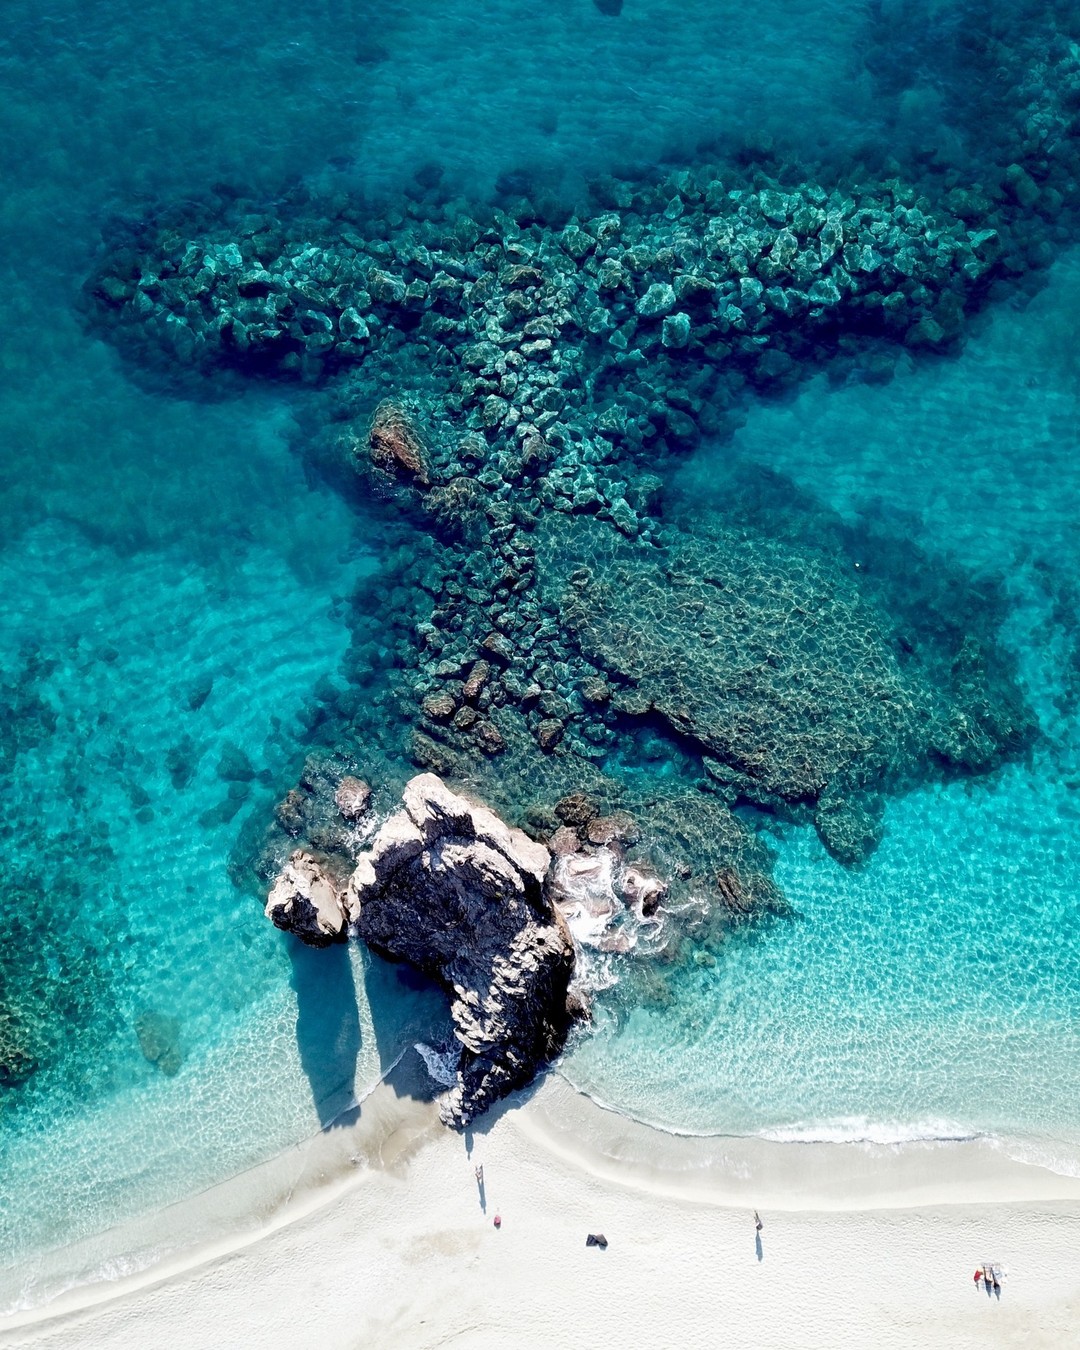 𝑬𝒔𝒕𝒂𝒕𝒆 𝒊𝒕𝒂𝒍𝒊𝒂𝒏𝒂 🇮🇹
Giugno, Luglio e Settembre... anche per quest'estate 2022, vediamo mille sfumature di blu! 
PUGLIA e SARDEGNA: scegli le più belle spiagge d'#Italia per le tue vacanze!

💙PUGLIA a Giugno: Marina di Ugento, lì dove finisce l'Italia, ad una spiaggia di distanza delle Maldive del Salento. 

💙SARDEGNA Costa Rei: 7 o 14 notti, decidi tu quanto mare vuoi nella tua estate. A fine giugno si parte!

💙SARDEGNA: ancora Sardegna fino alla fine di luglio. Quando il sole è più caldo, scegli l'azzurro del mare a Muravera.

#estate #italia #puglia #salento #sardegna #viaggi #viaggiare #viaggiatori #travel #traveldesignstudio